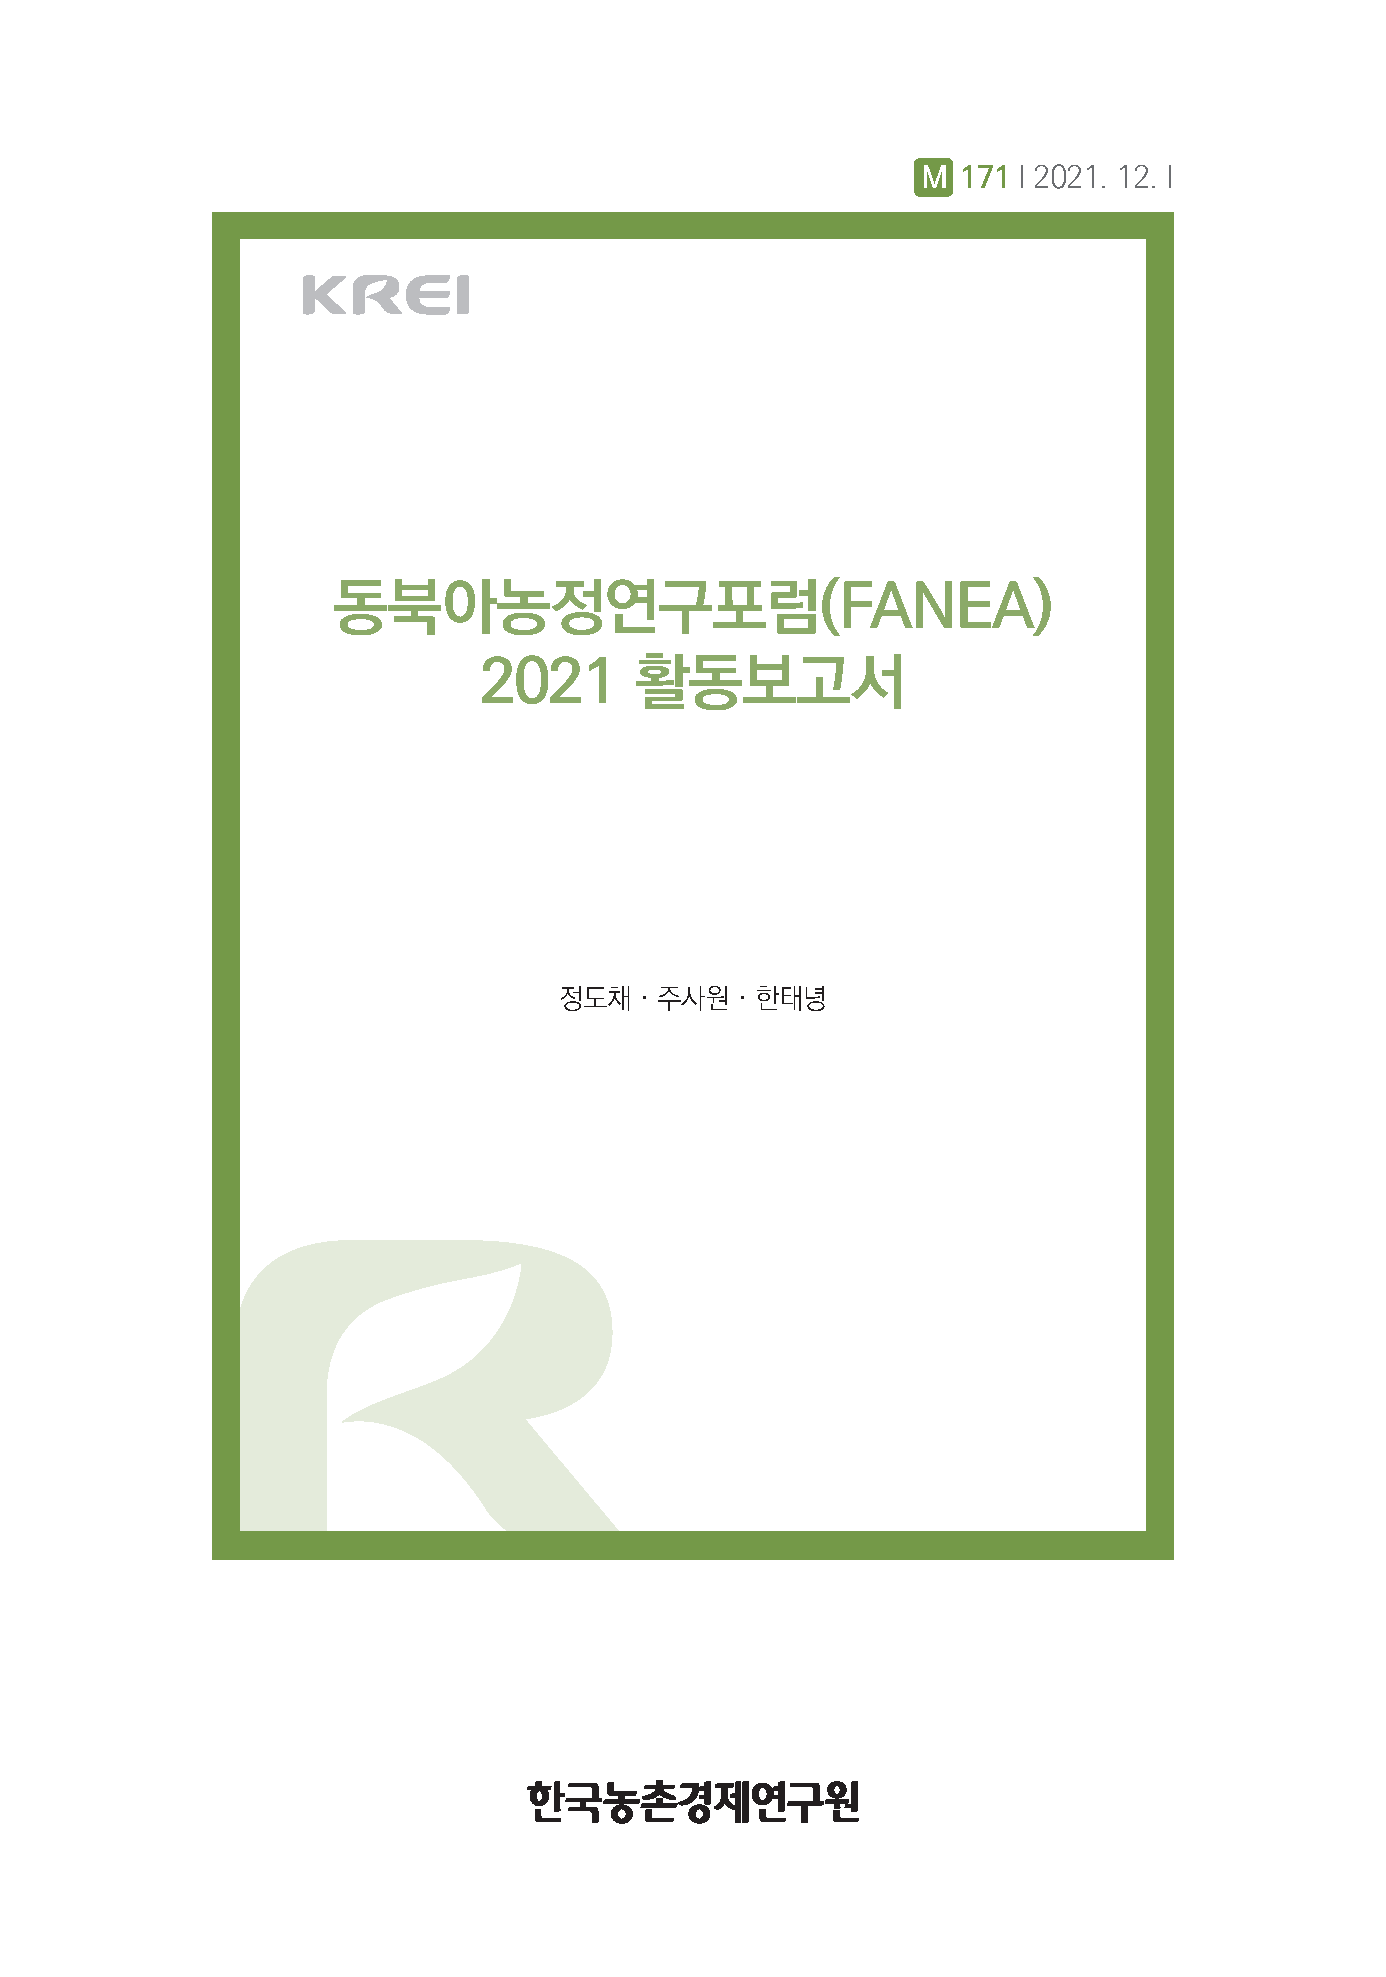 2021 FANEA Annual Report 이미지